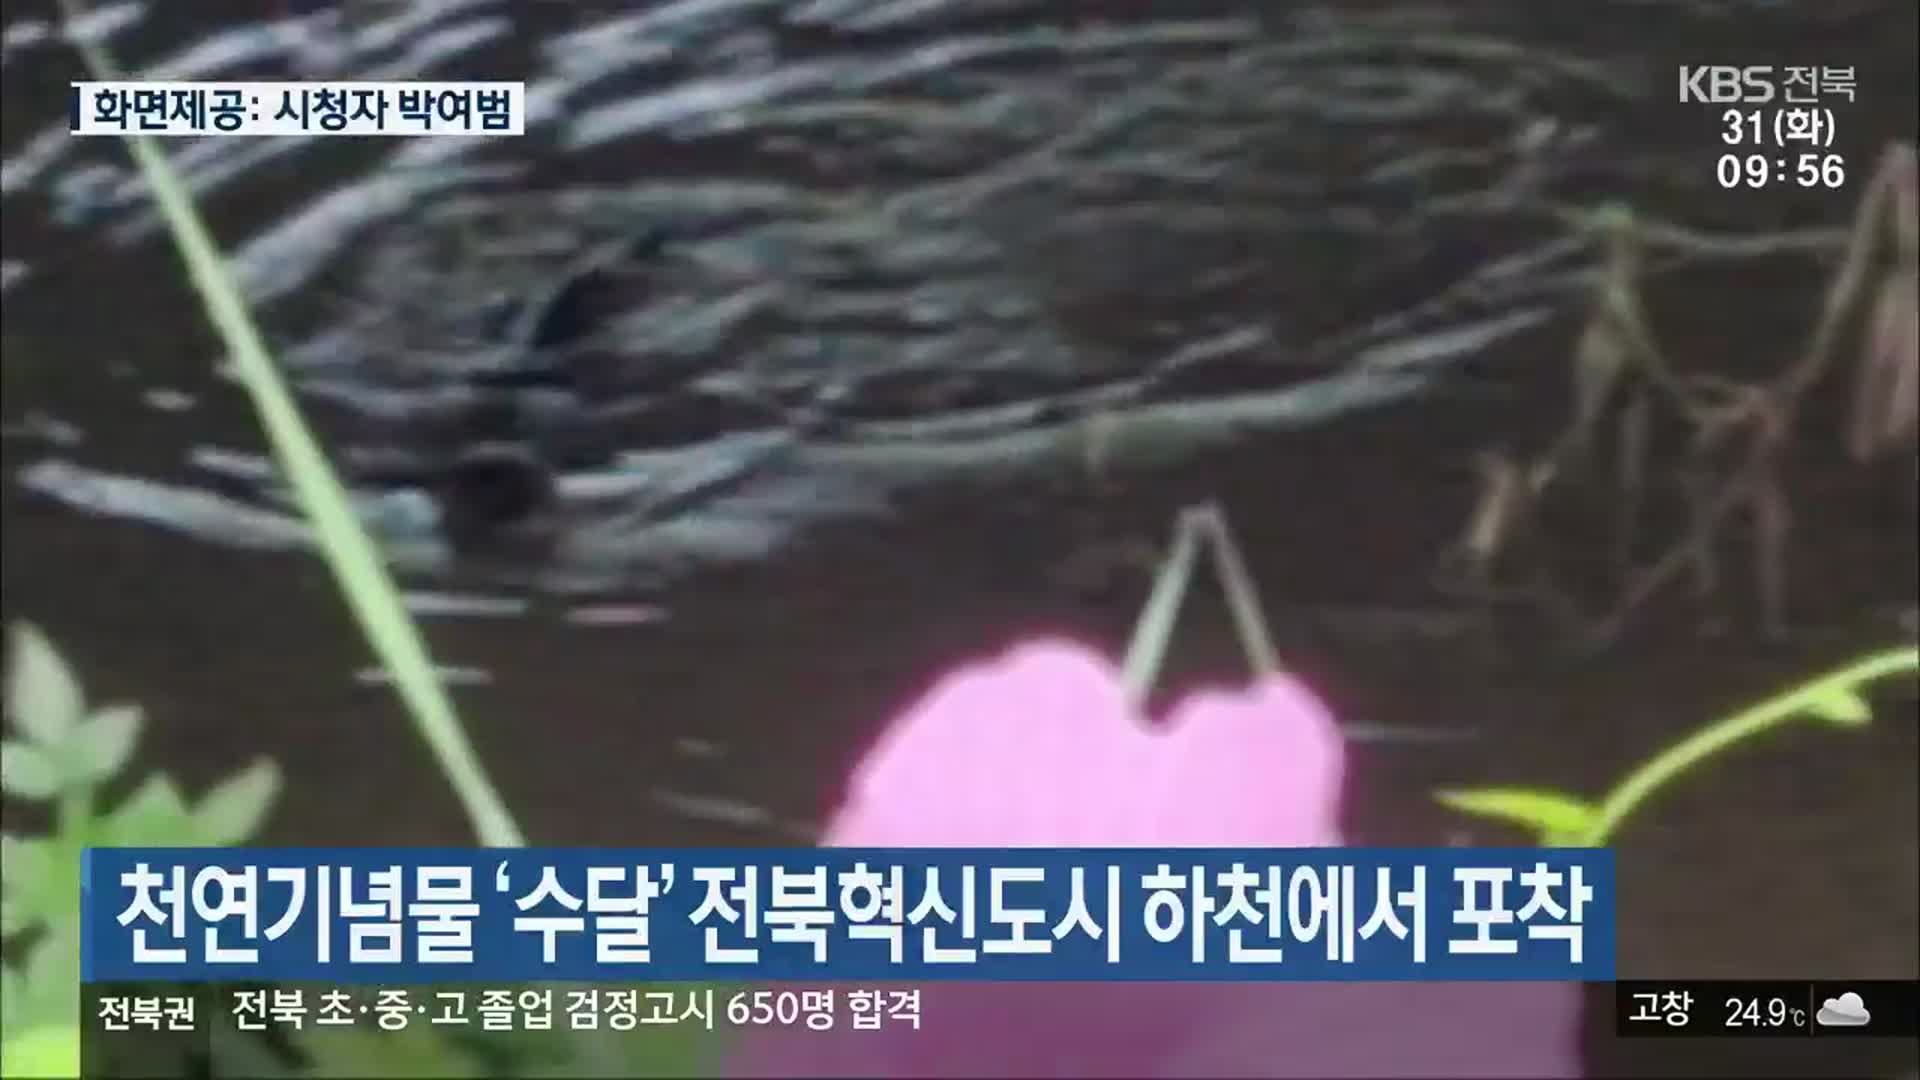 천연기념물 ‘수달’ 전북혁신도시 하천에서 포착